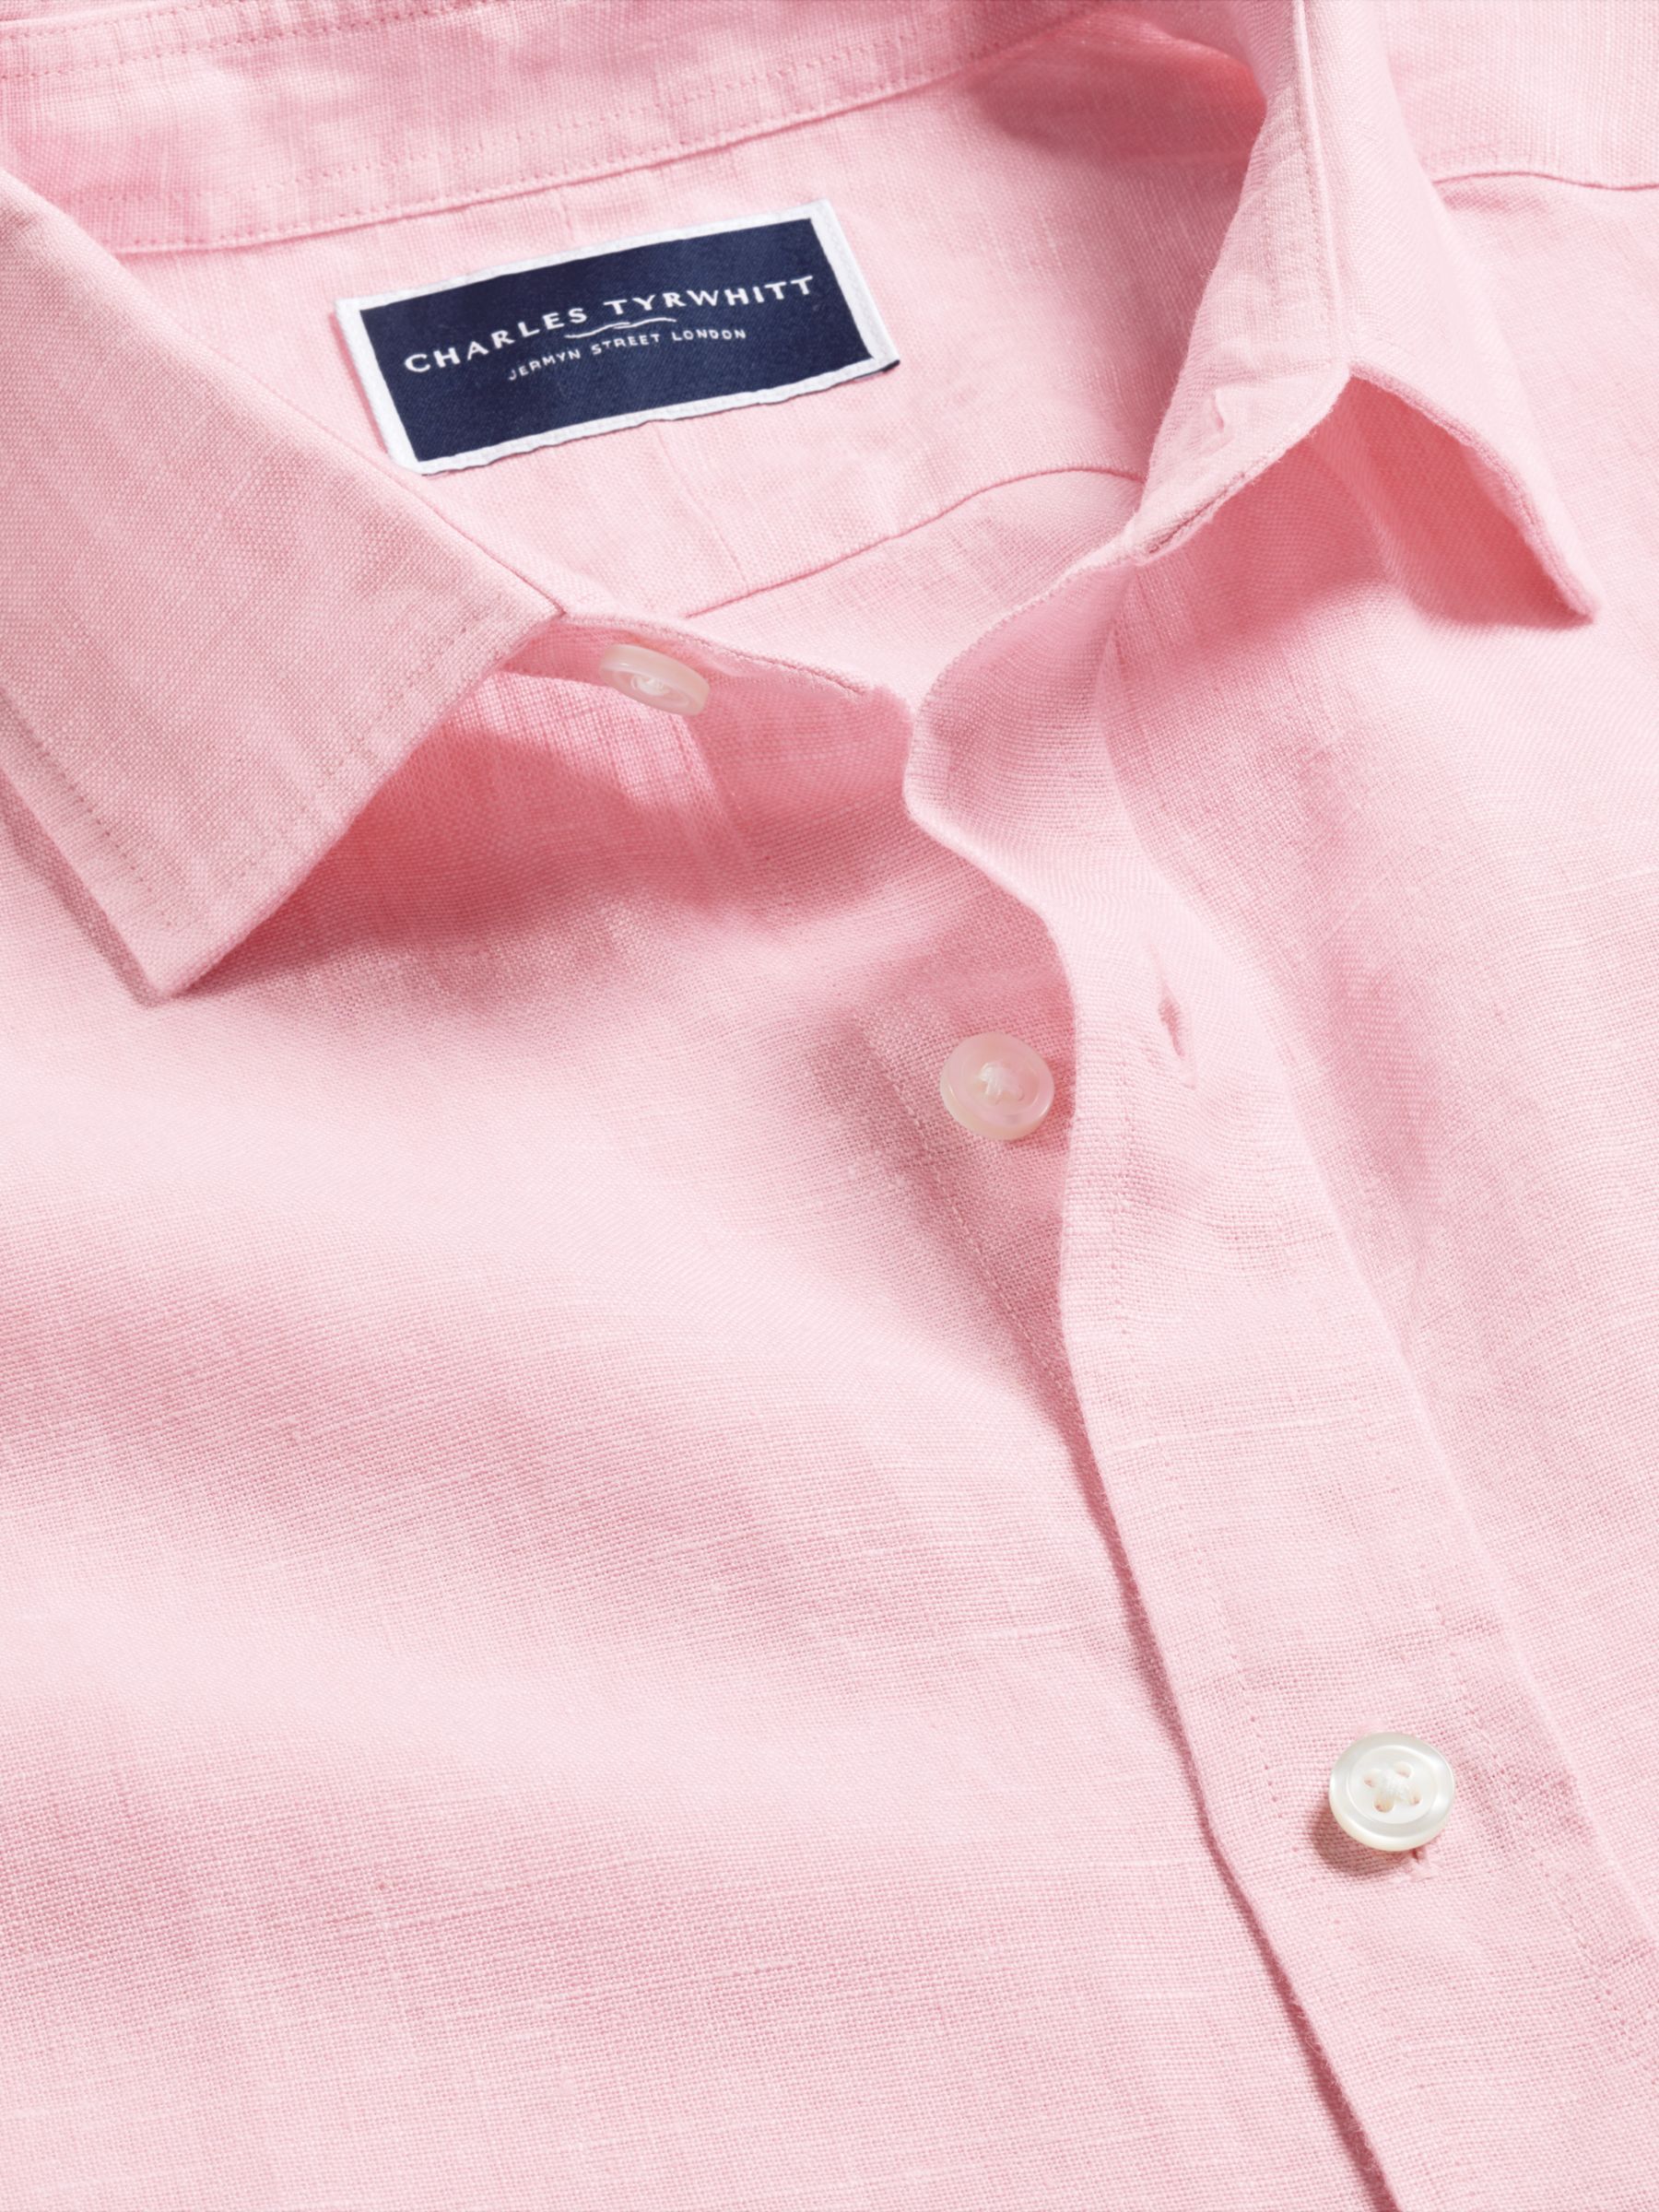 Charles Tyrwhitt Linen Classic Fit Short Sleeve Shirt, Pink, M